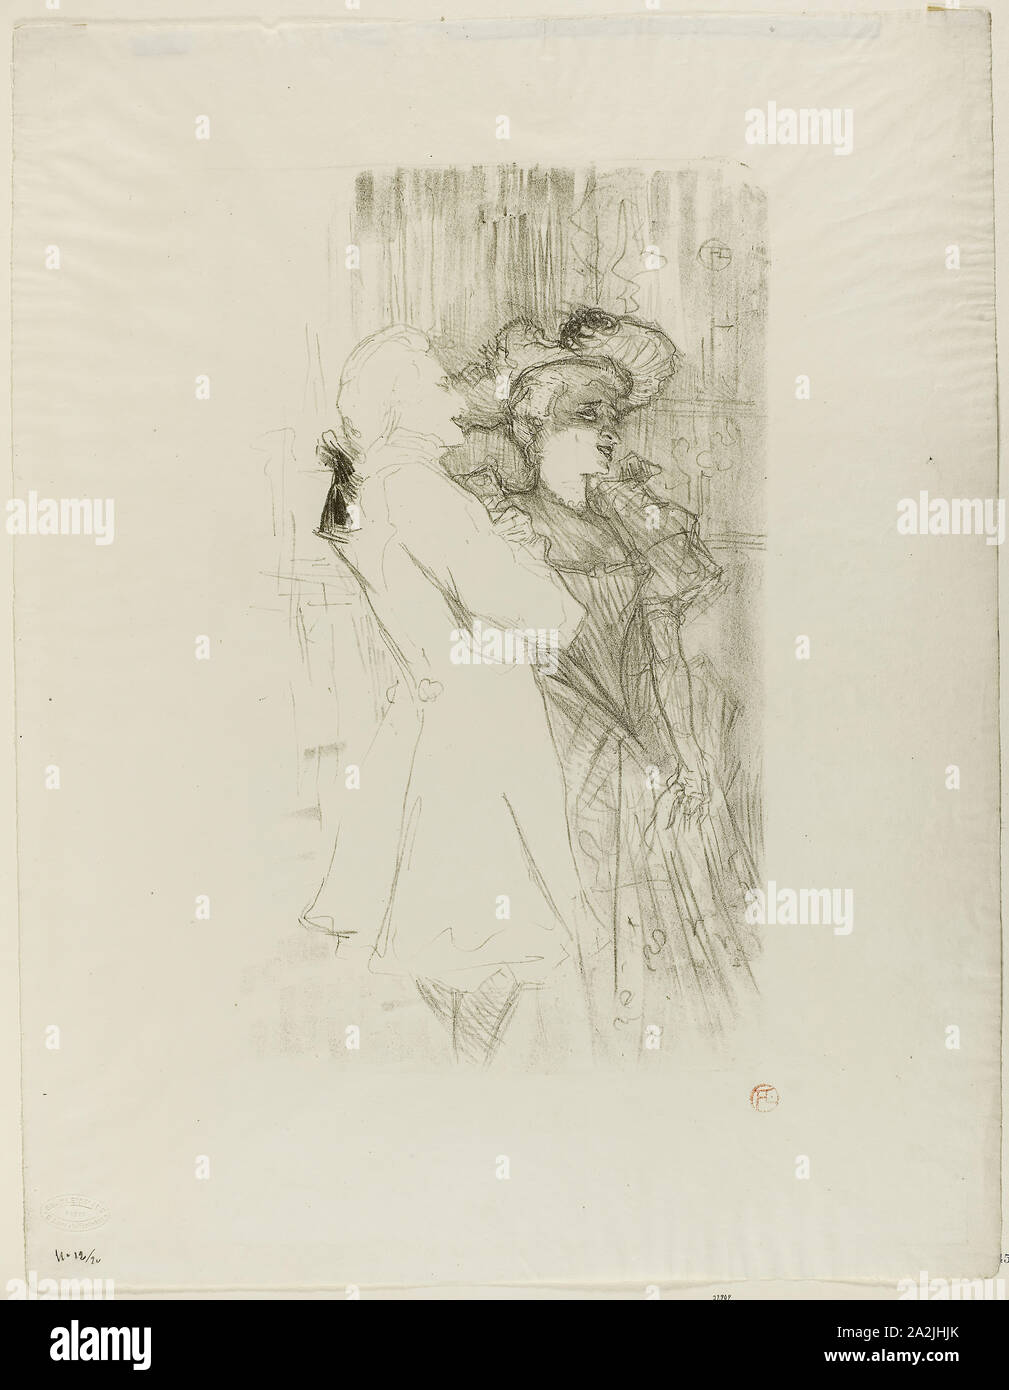 Lender and Auguez in La Chanson de Fortunio, 1895, Henri de Toulouse-Lautrec, French, 1864-1901, France, Color lithograph on ivory wove paper, 372 × 232 mm (image), 516 × 401 mm (sheet Stock Photo